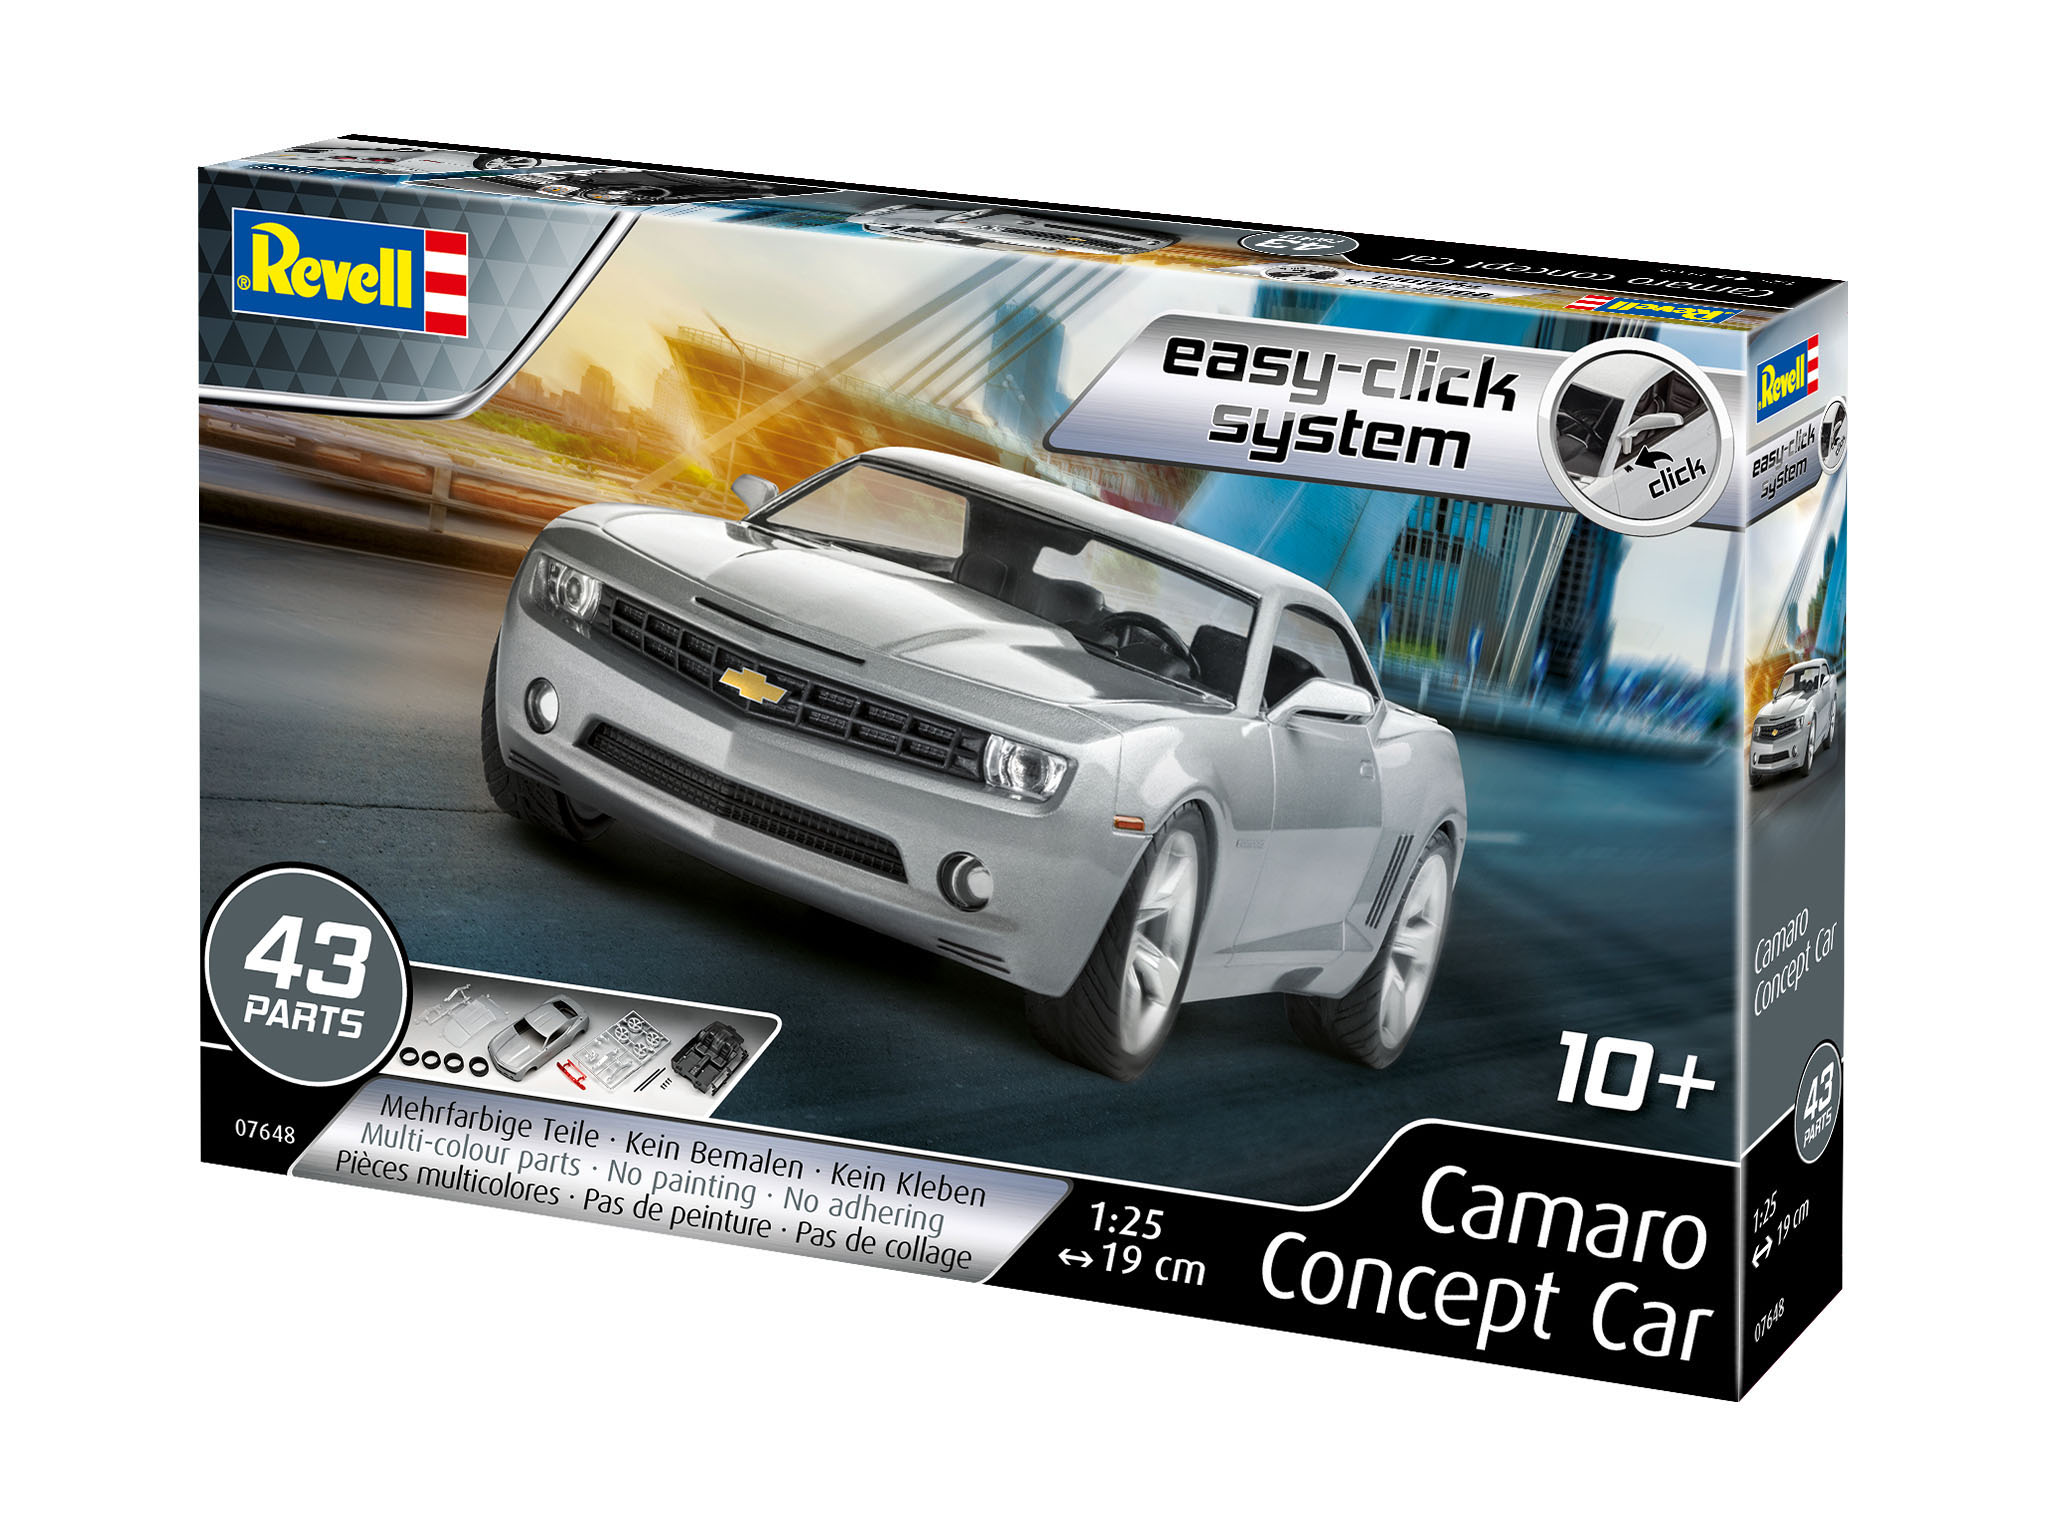 Camaro Concept Car - 07648